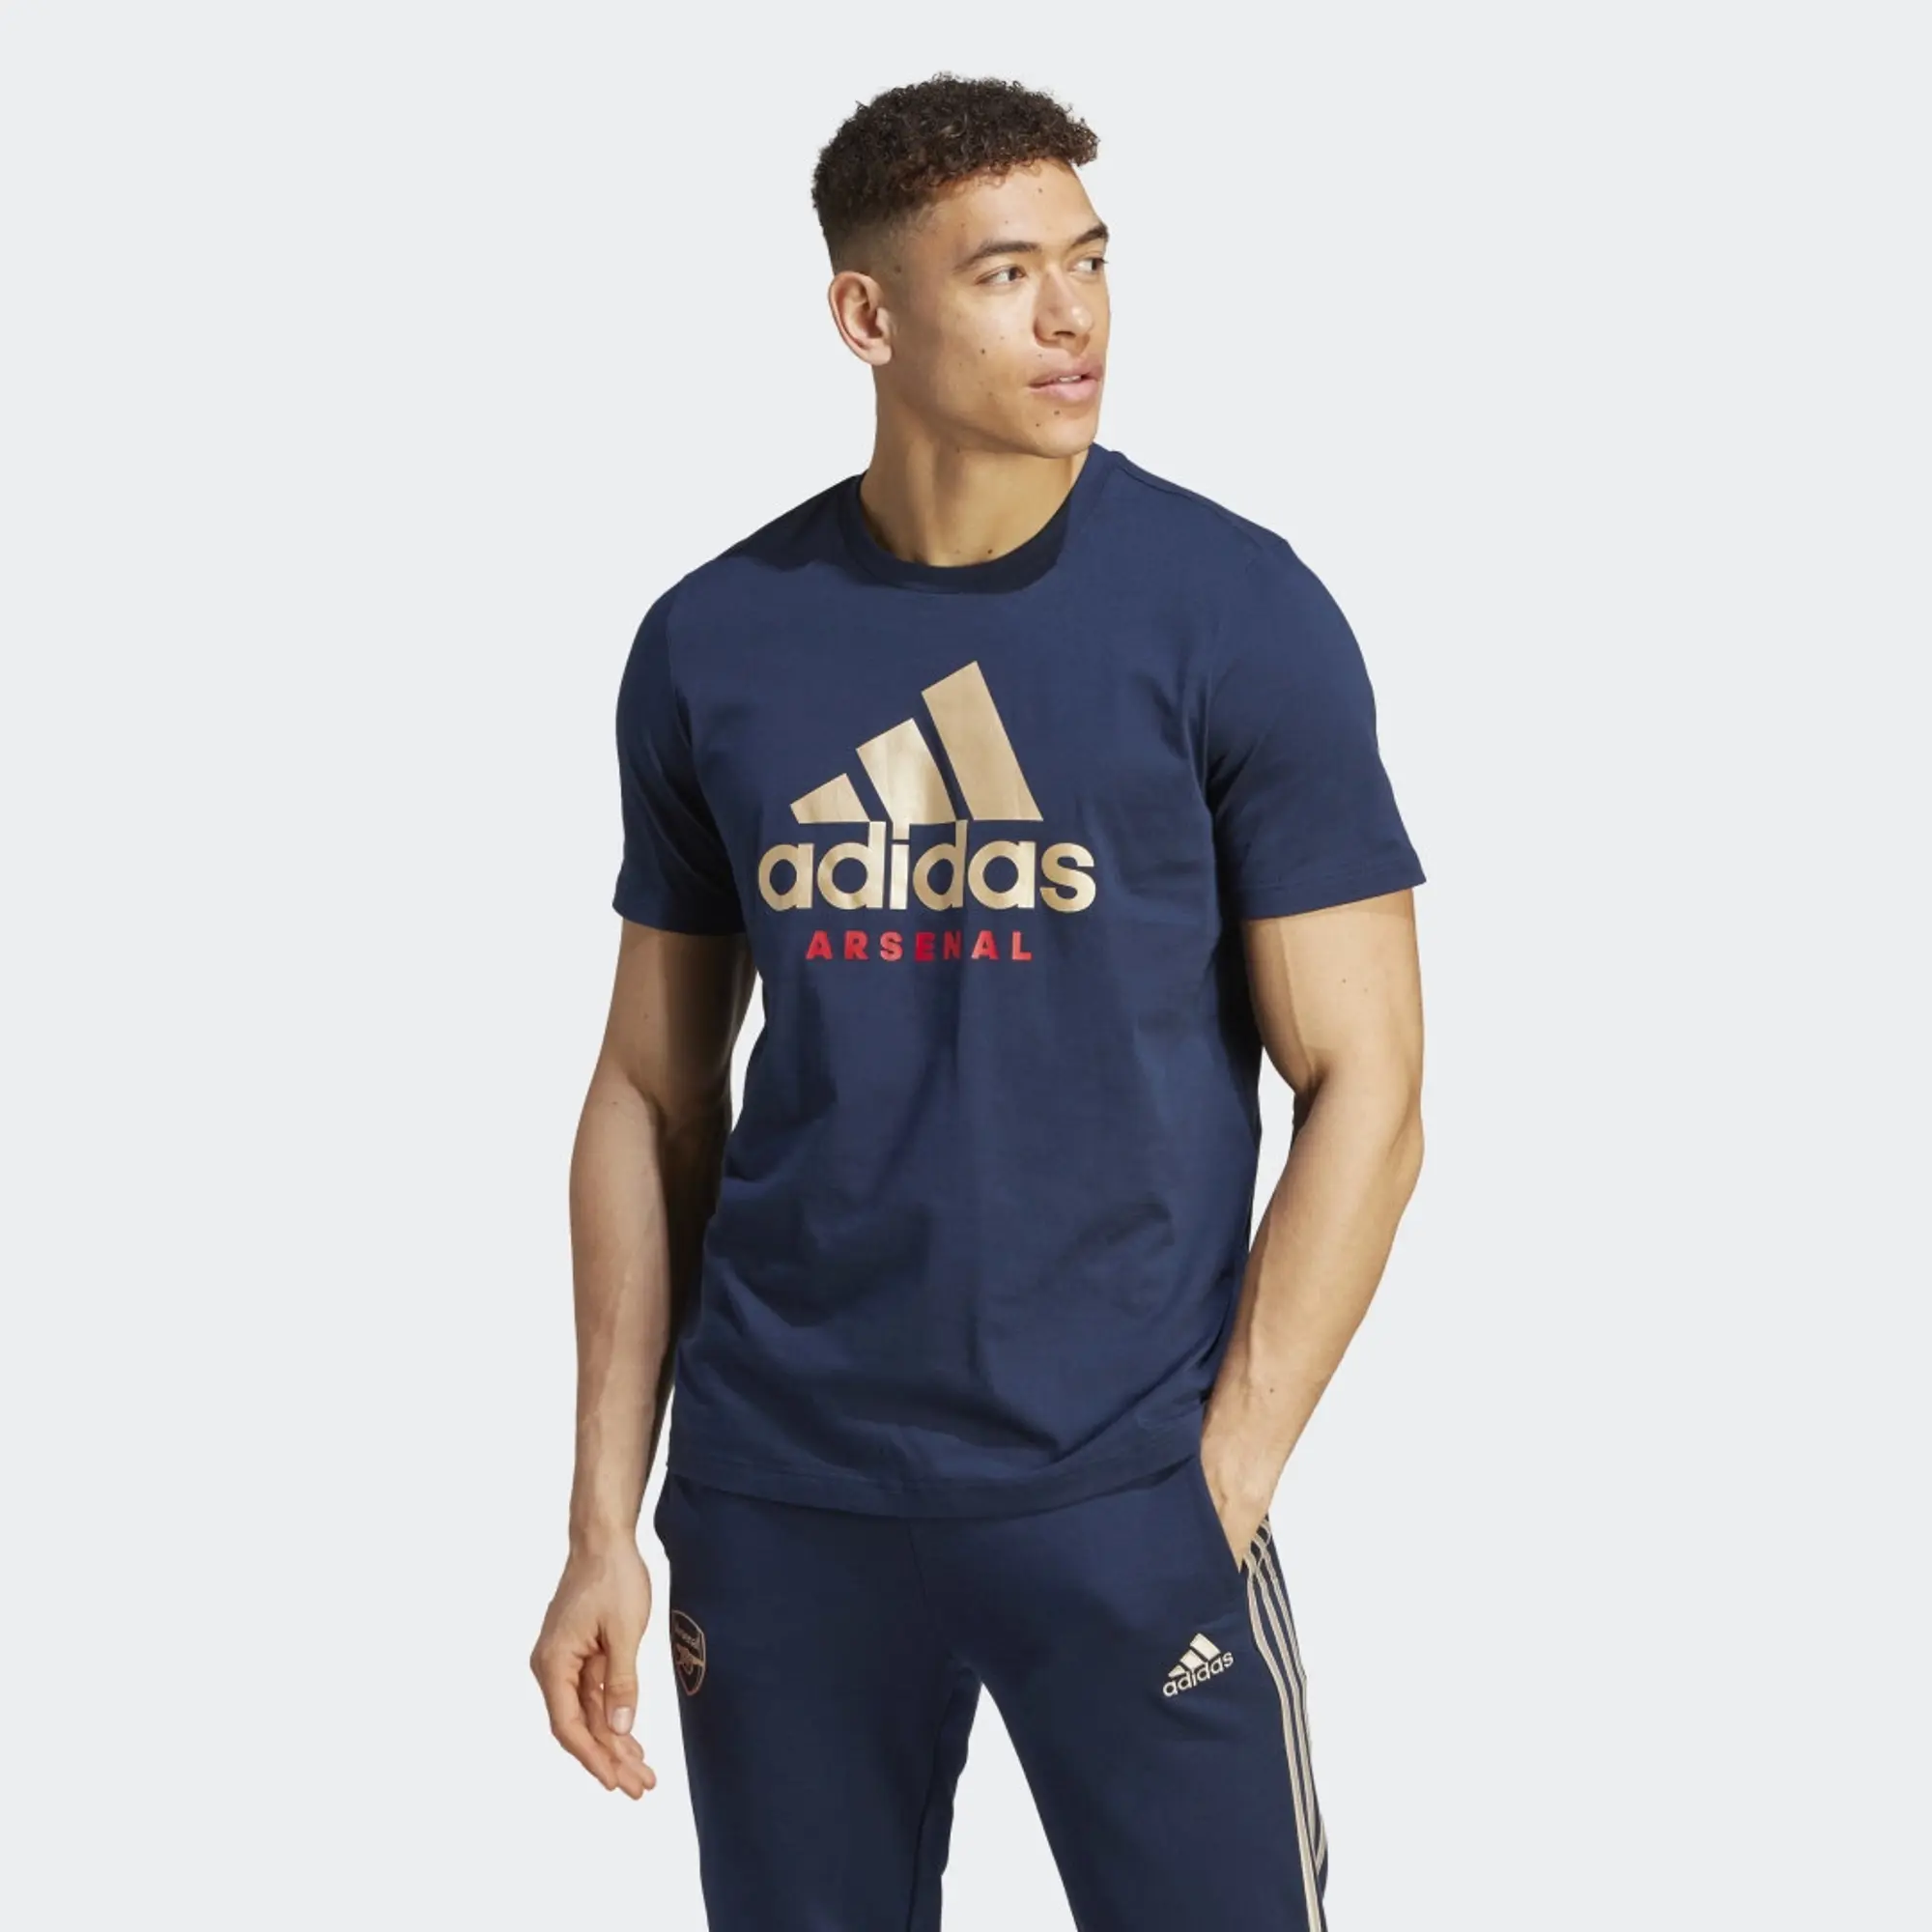 adidas Arsenal FC DNA Graphic T-Shirt - Navy - Mens